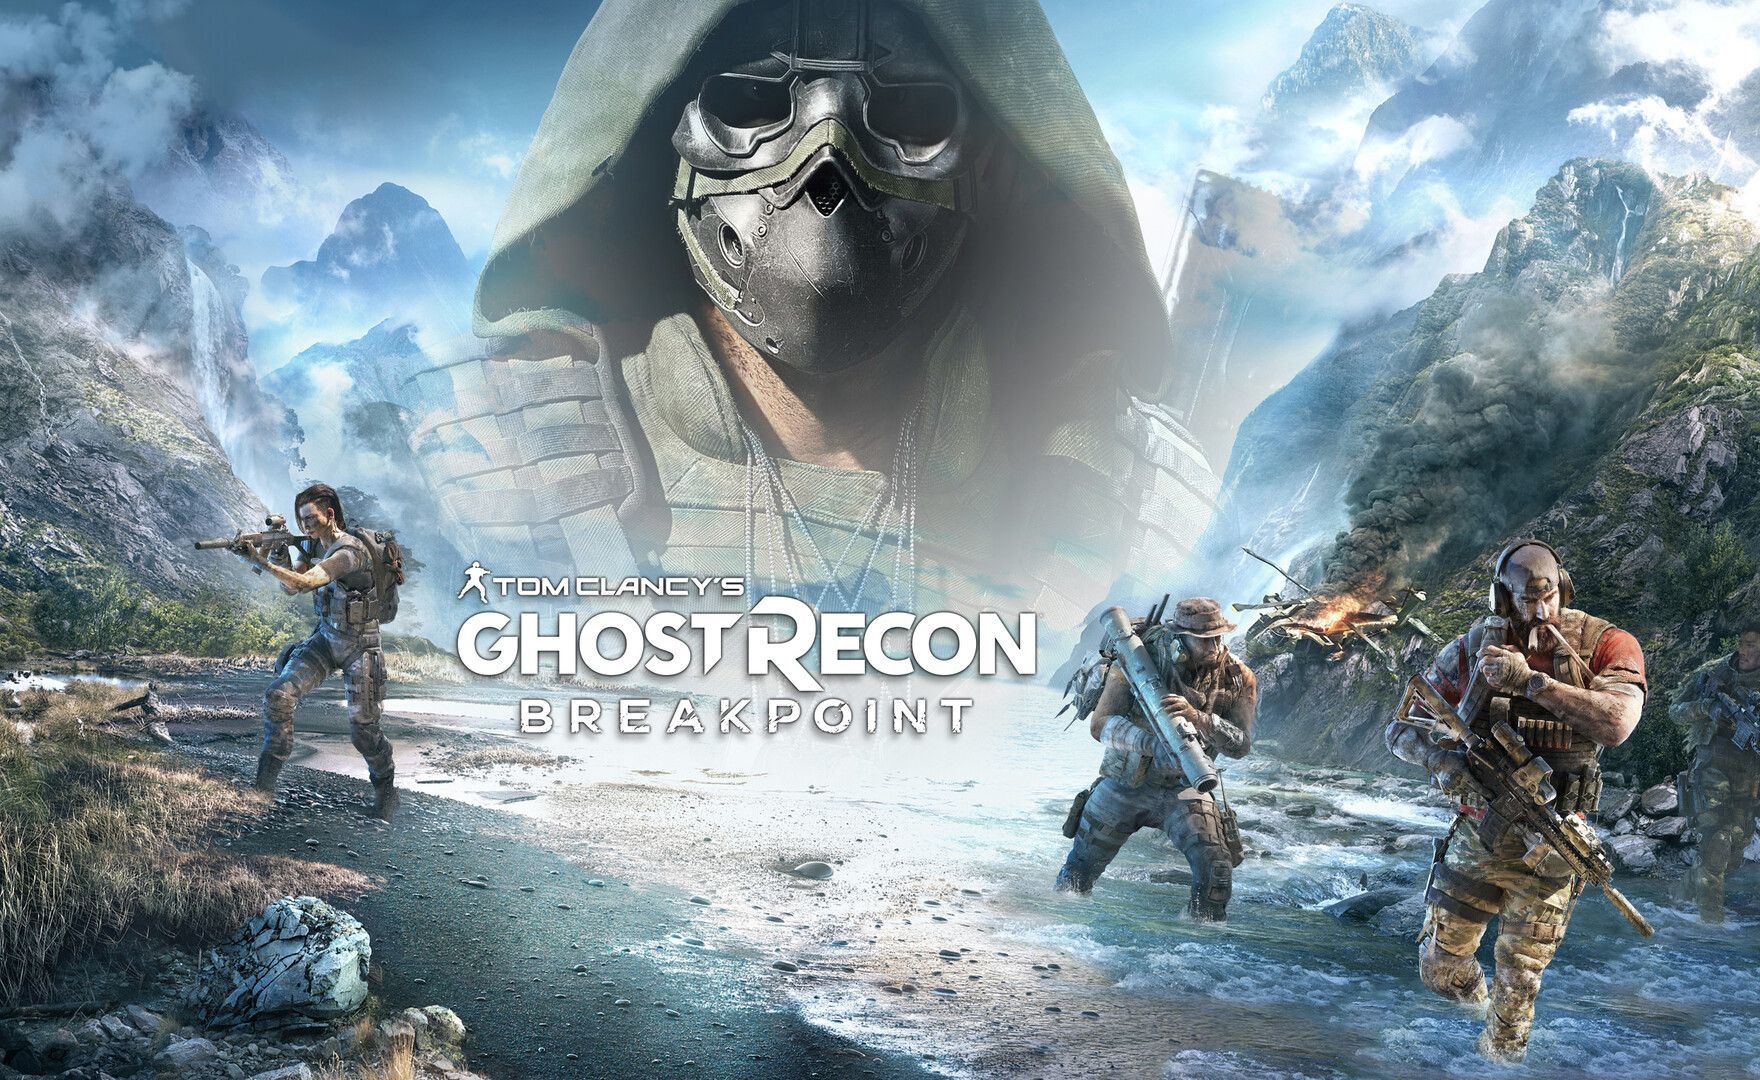 Scopriamo cos’è Ghost Recon Breakpoint nel nuovo trailer